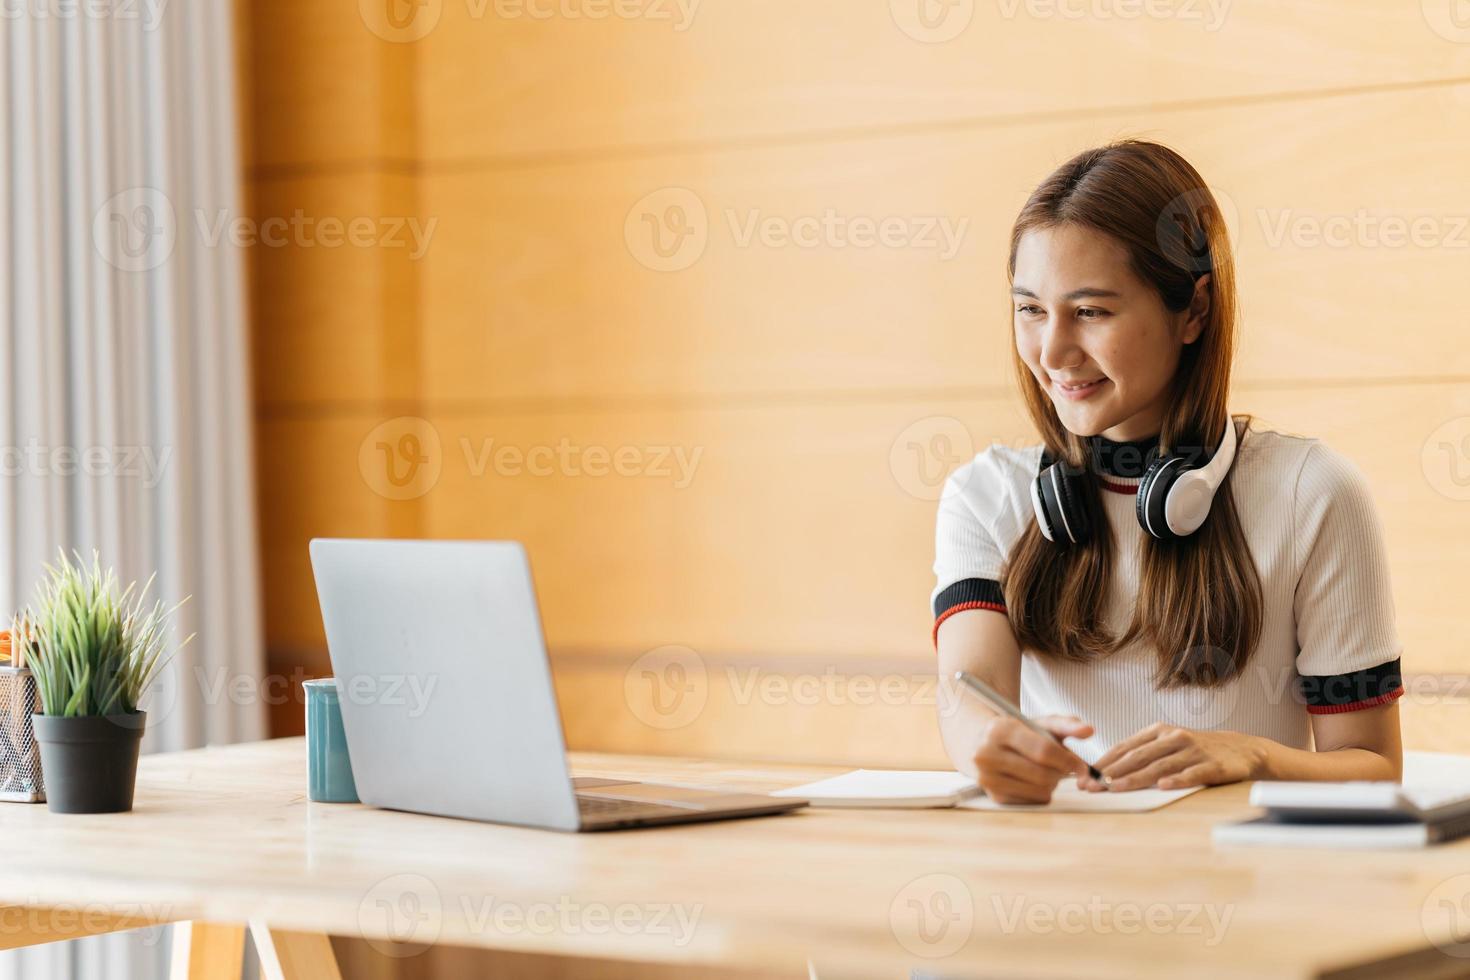 feliz mujer de negocios asiática con auriculares toma notas habla por llamada de conferencia haciendo video chat en una laptop en la oficina, sonriente agente de servicio de soporte chino escribe información consulta al cliente foto